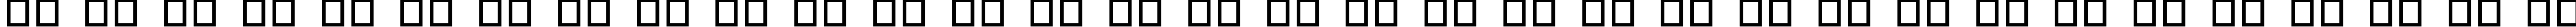 Пример написания русского алфавита шрифтом Aunchanted Thin Expanded